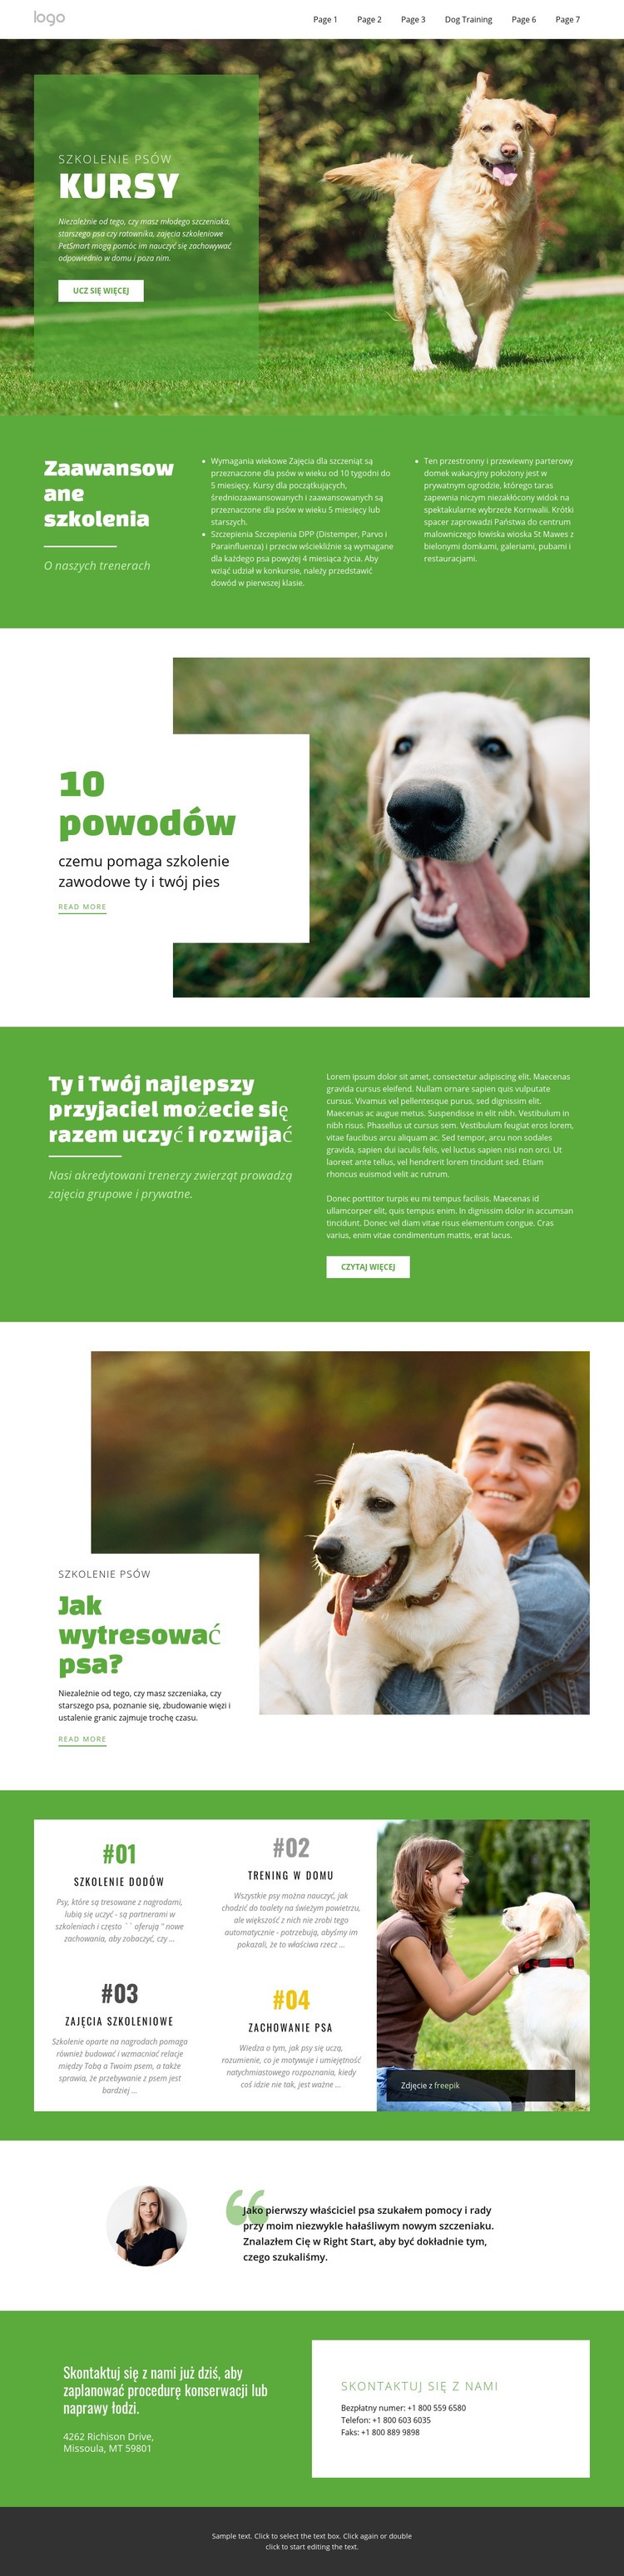 Kursy szkoleniowe dla zwierząt domowych Szablon HTML5